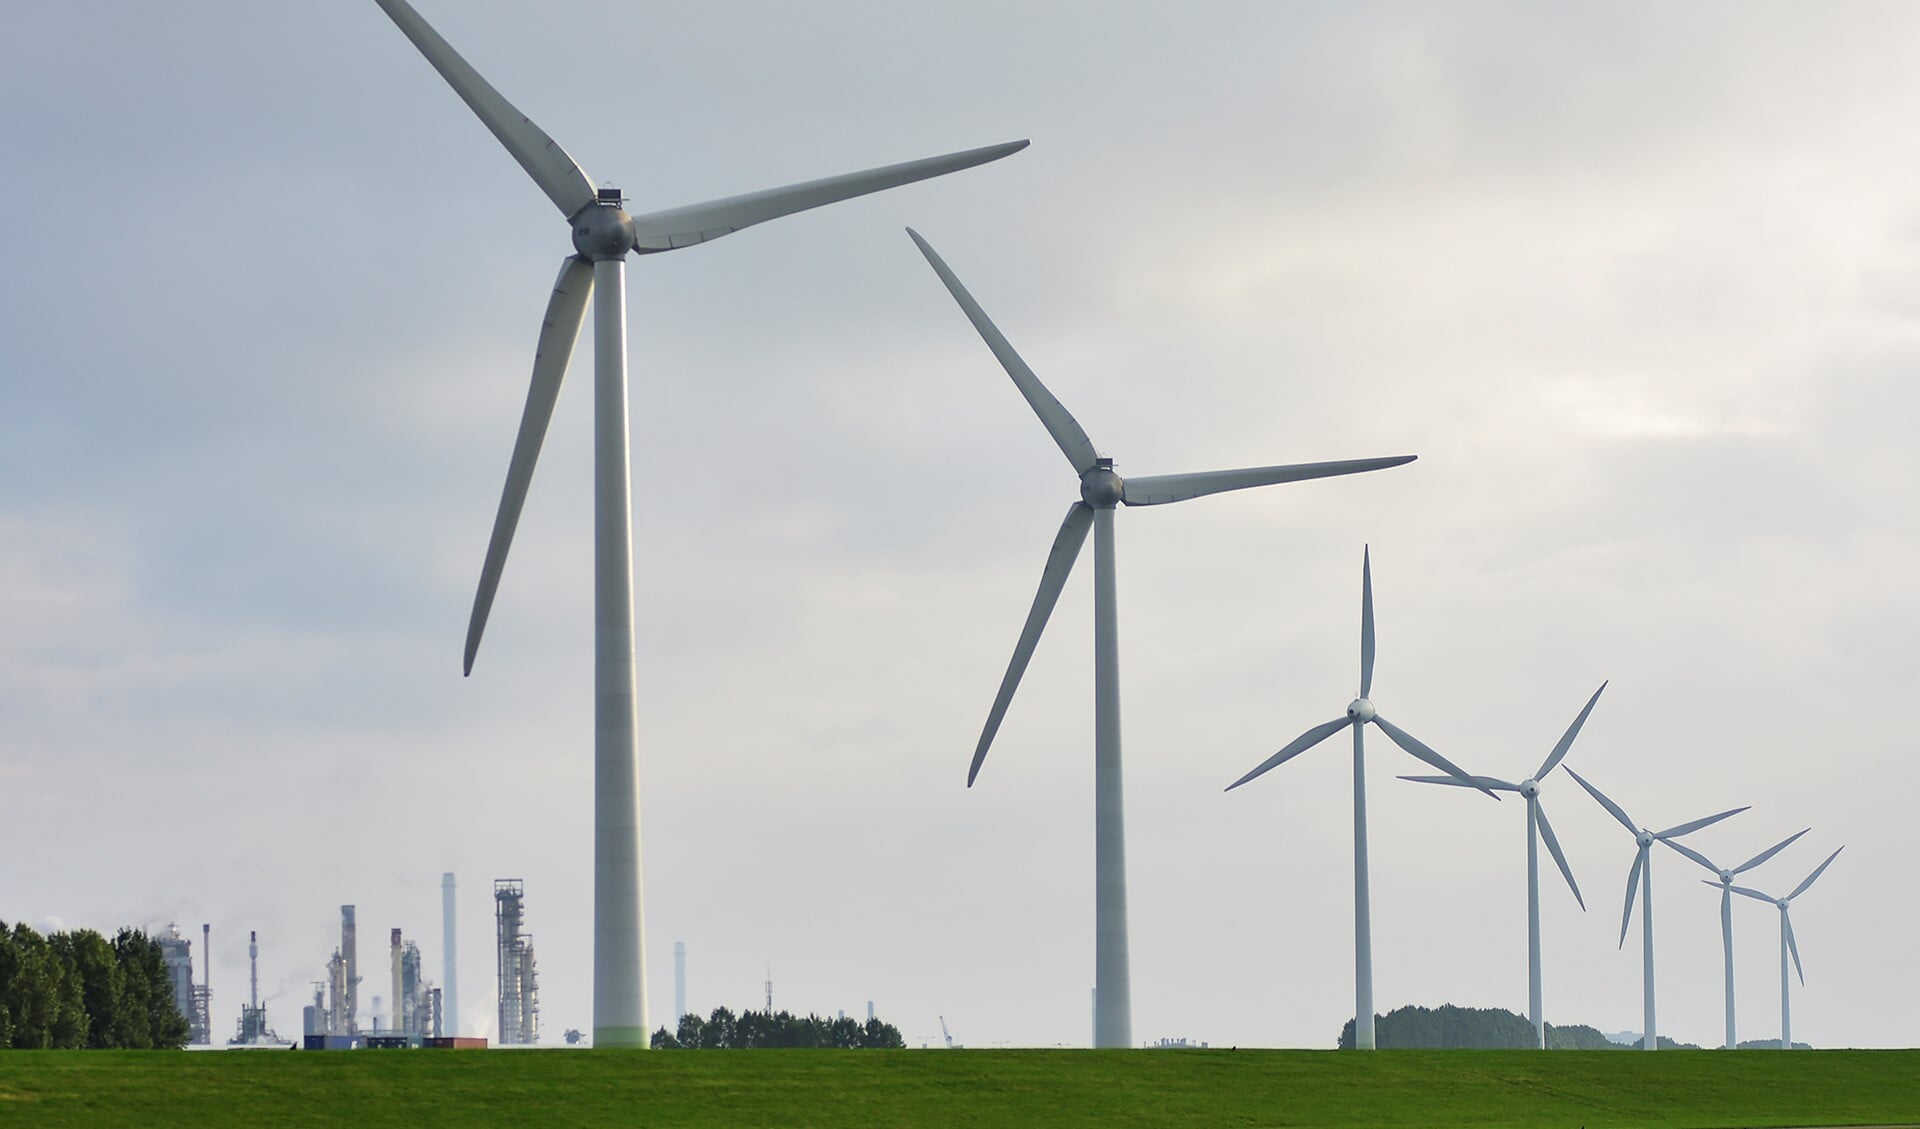 De windmolens in de omgeving van Geervliet. Foto: Foto-OK.nl